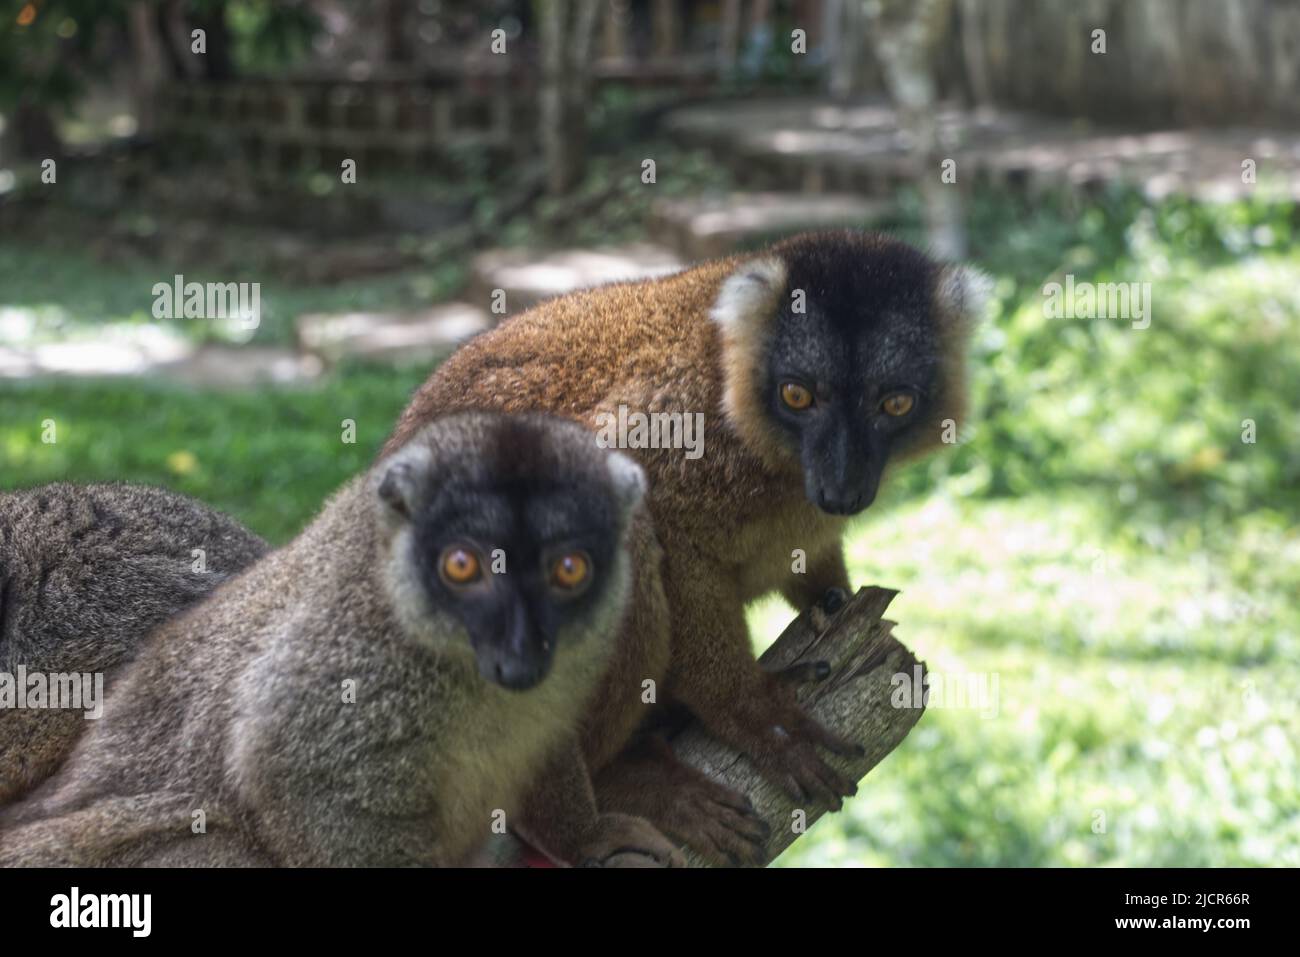 Die Welt der bedrohten Lemuren. Die schönsten Halbaffen sind unheimlich lieb, wenn sie sie etwas zu fressen bekommen :-) Stock Photo